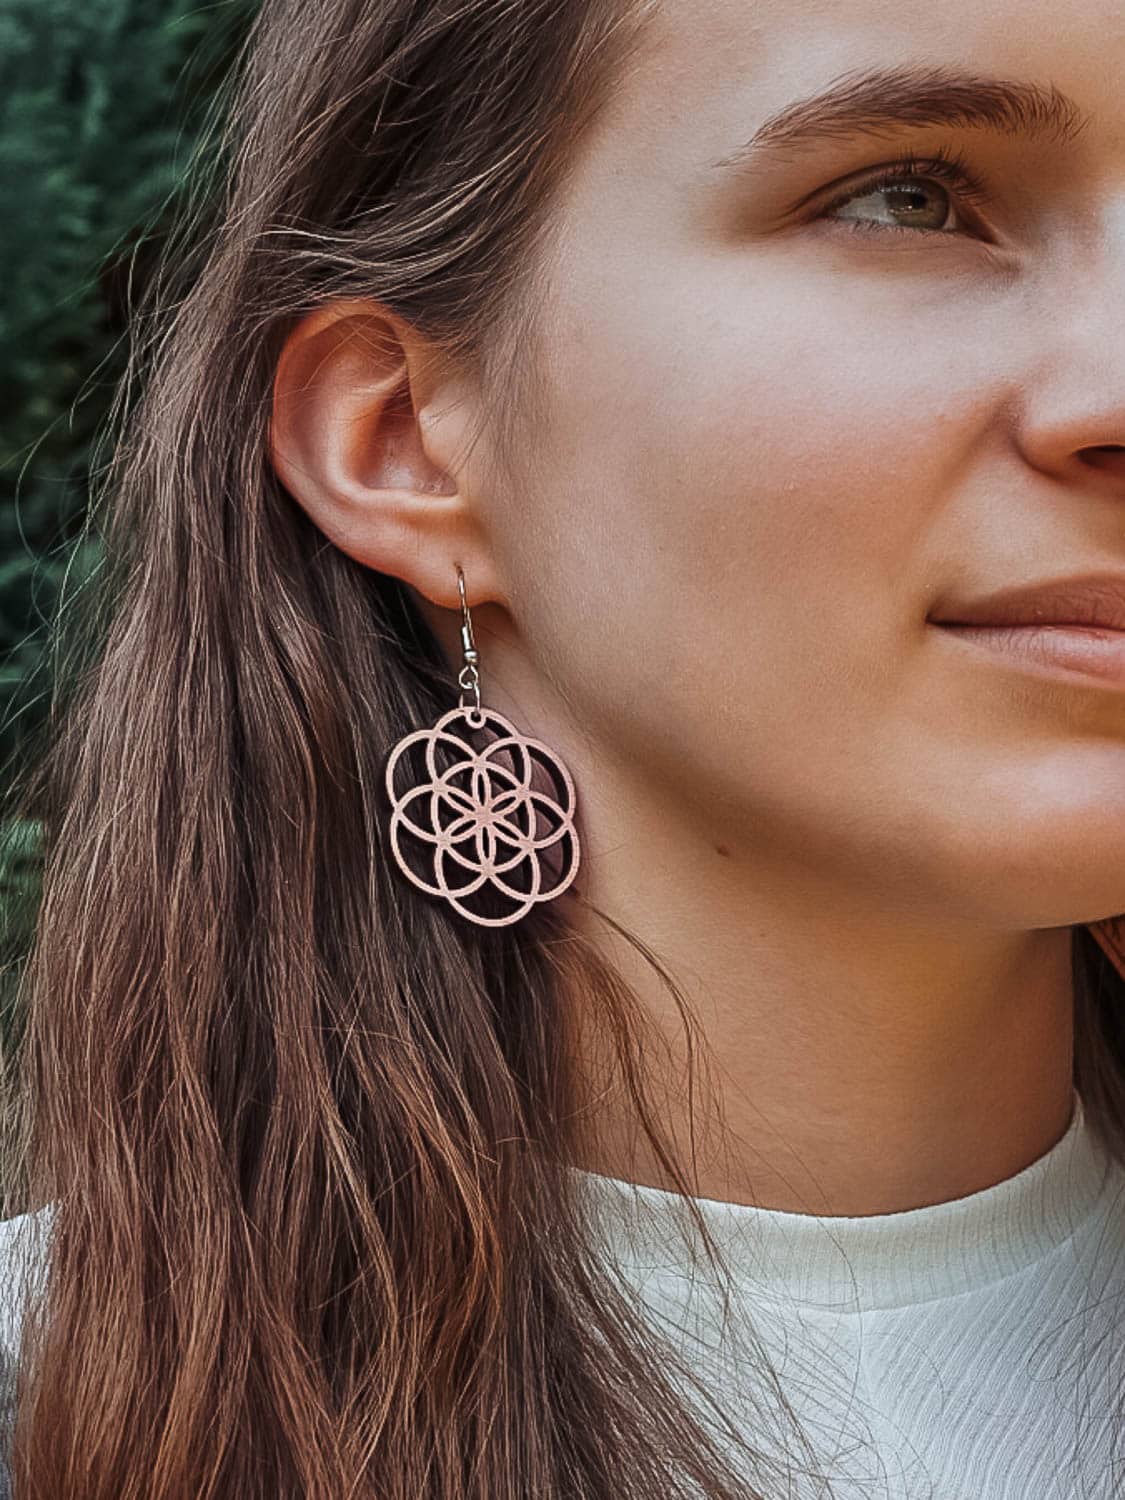 Boucles d'oreilles en bois Fiora inspirée de la fleur de vie